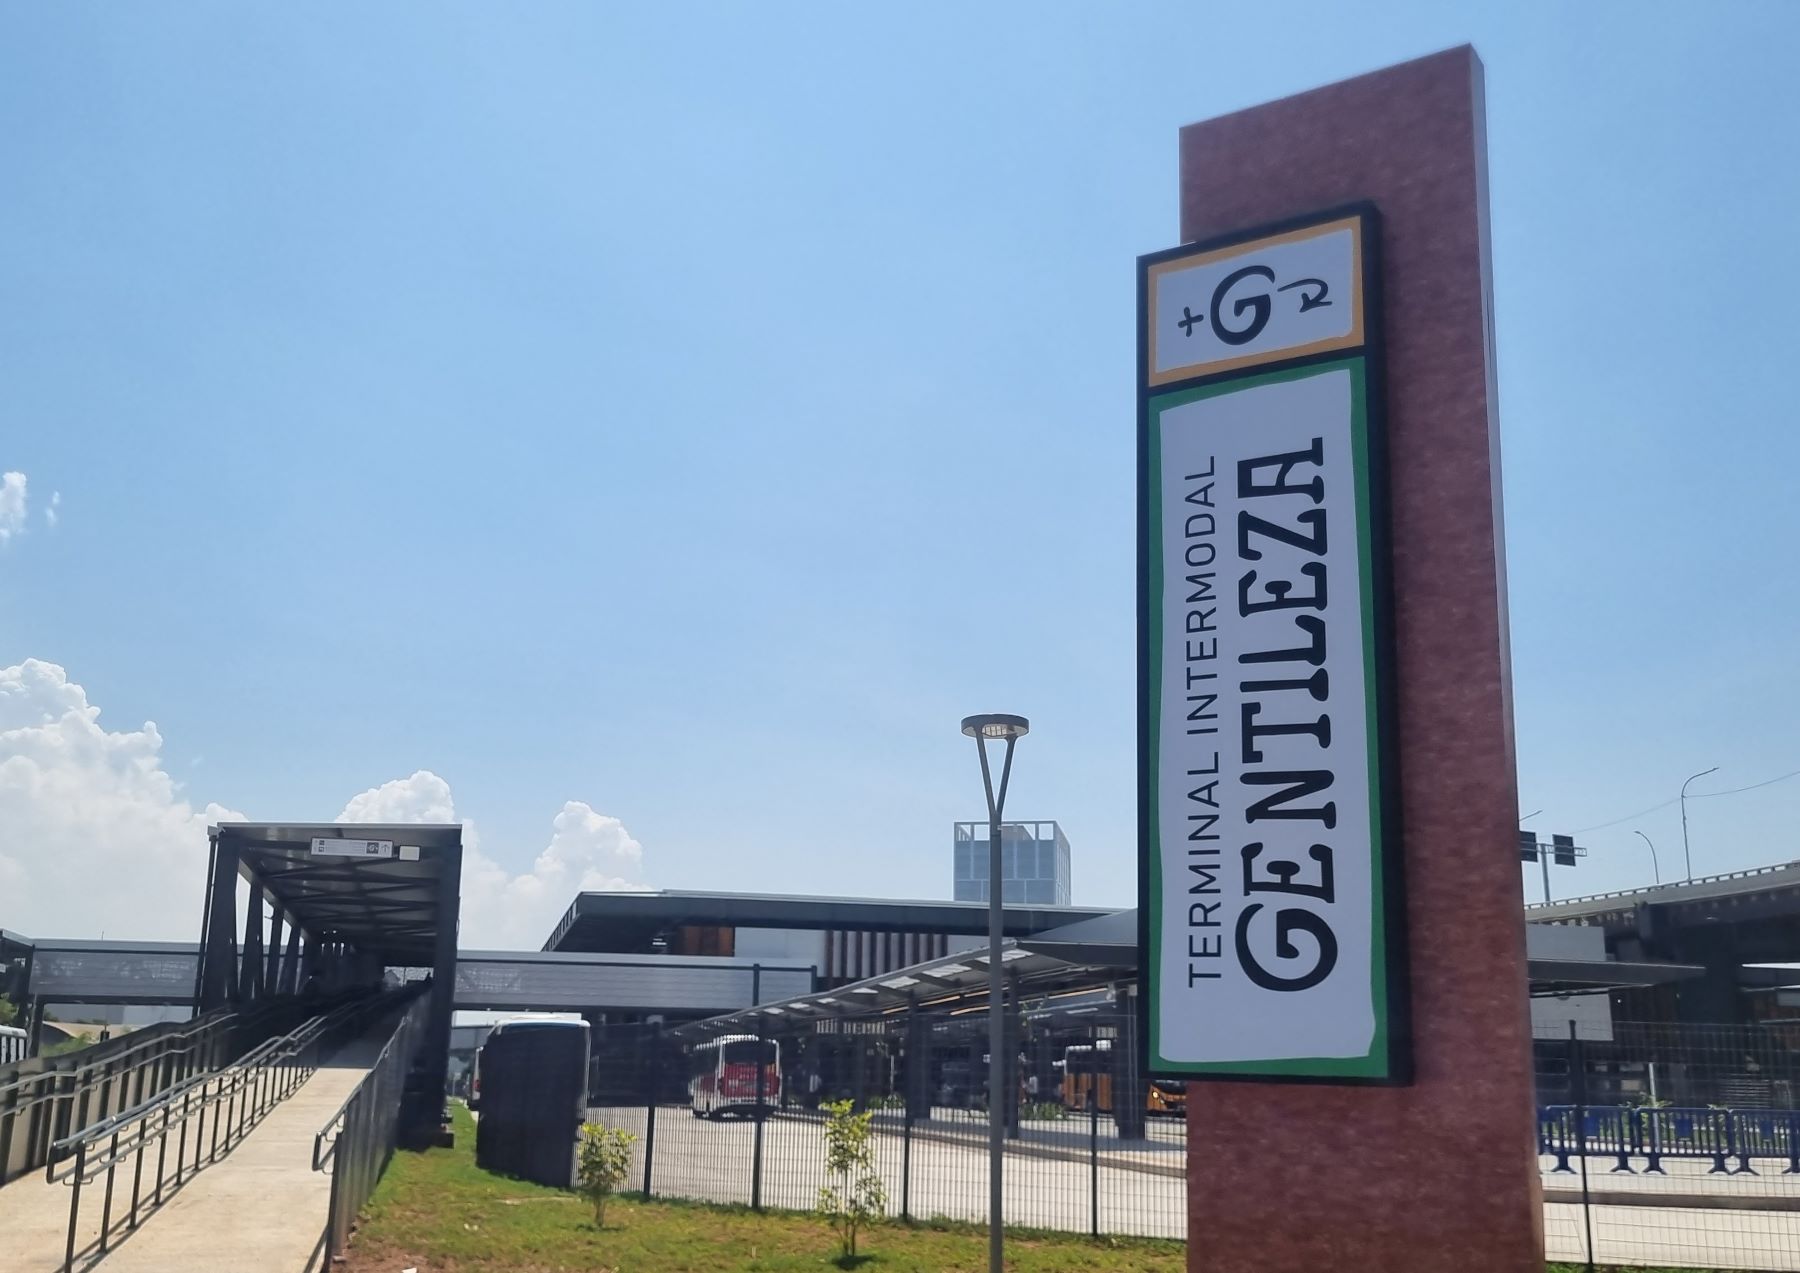 Terminal para VLT, BRT e ônibus leva nome do Profeta Gentileza, personagem da cidade: só transporte público de qualidade pode tornar a cidade mais democrática (Foto: Oscar Valporto) 